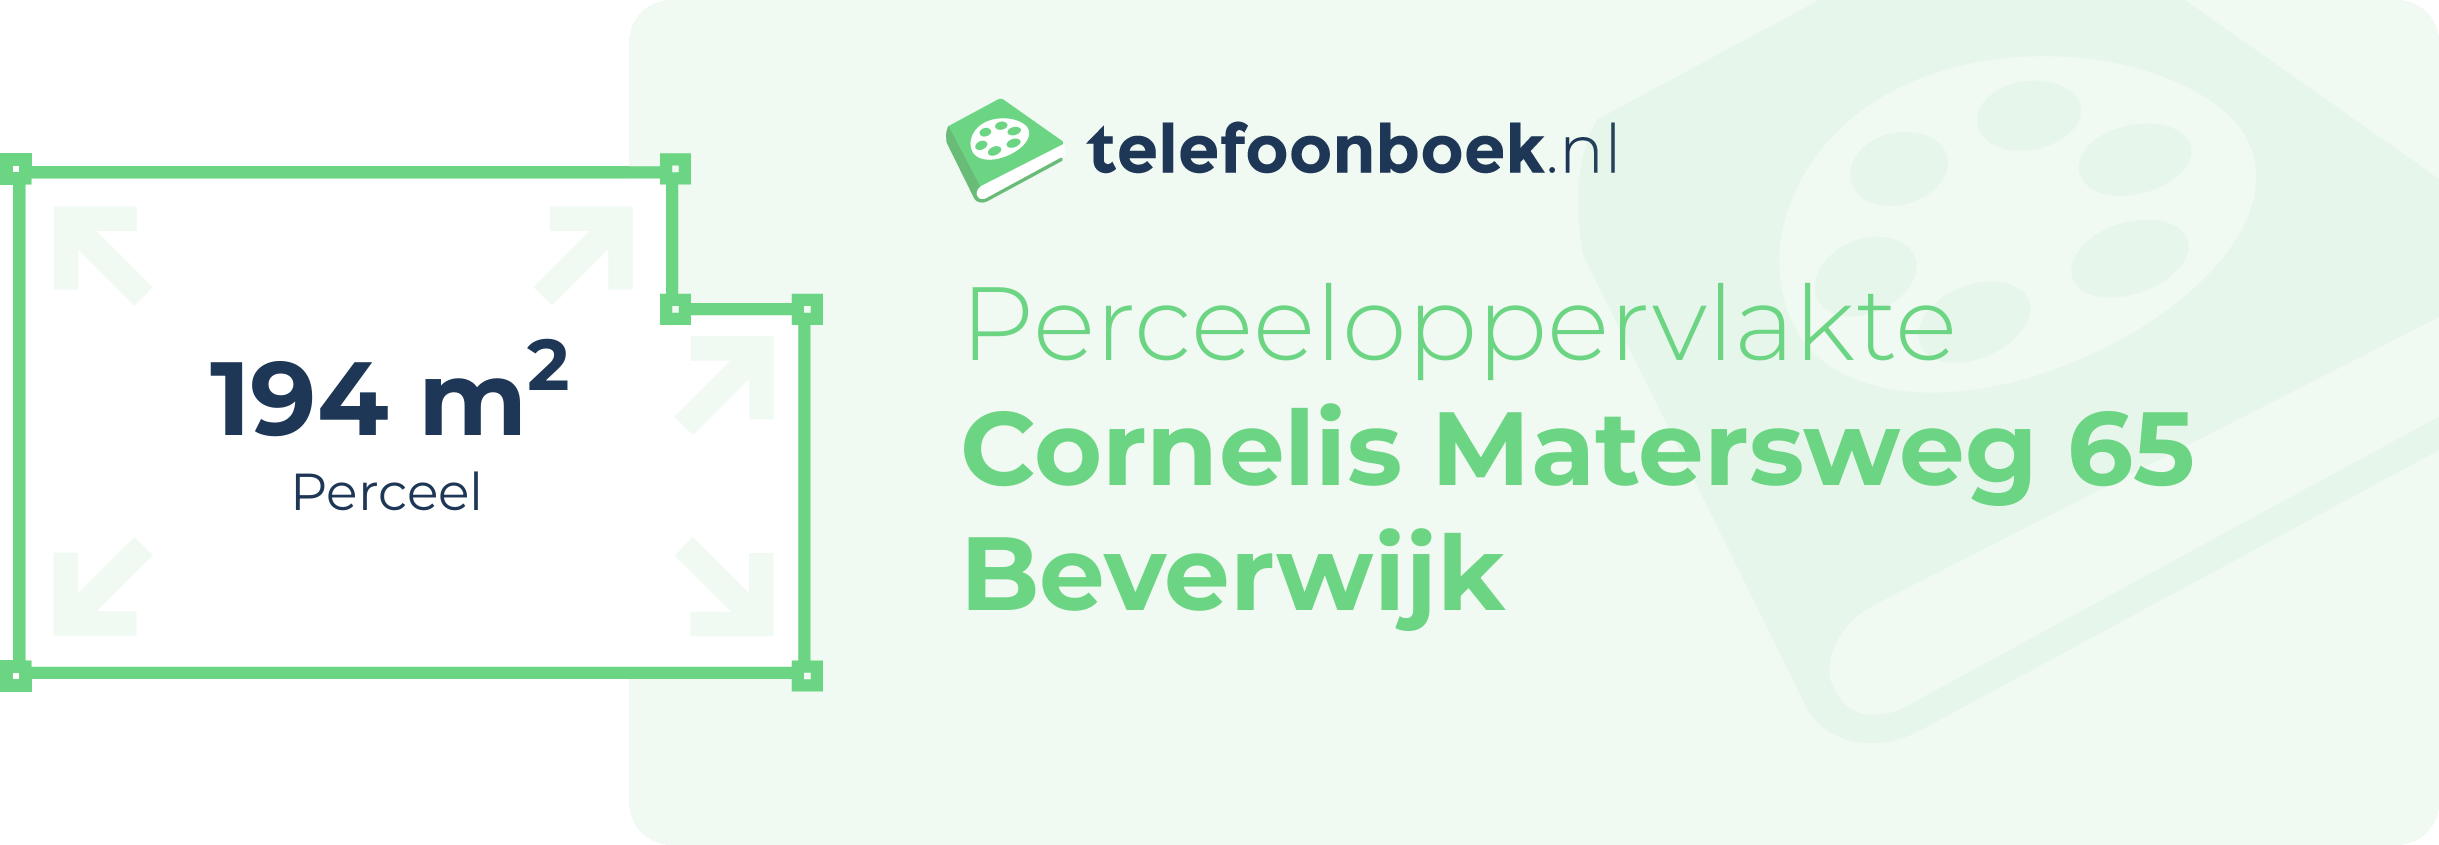 Perceeloppervlakte Cornelis Matersweg 65 Beverwijk